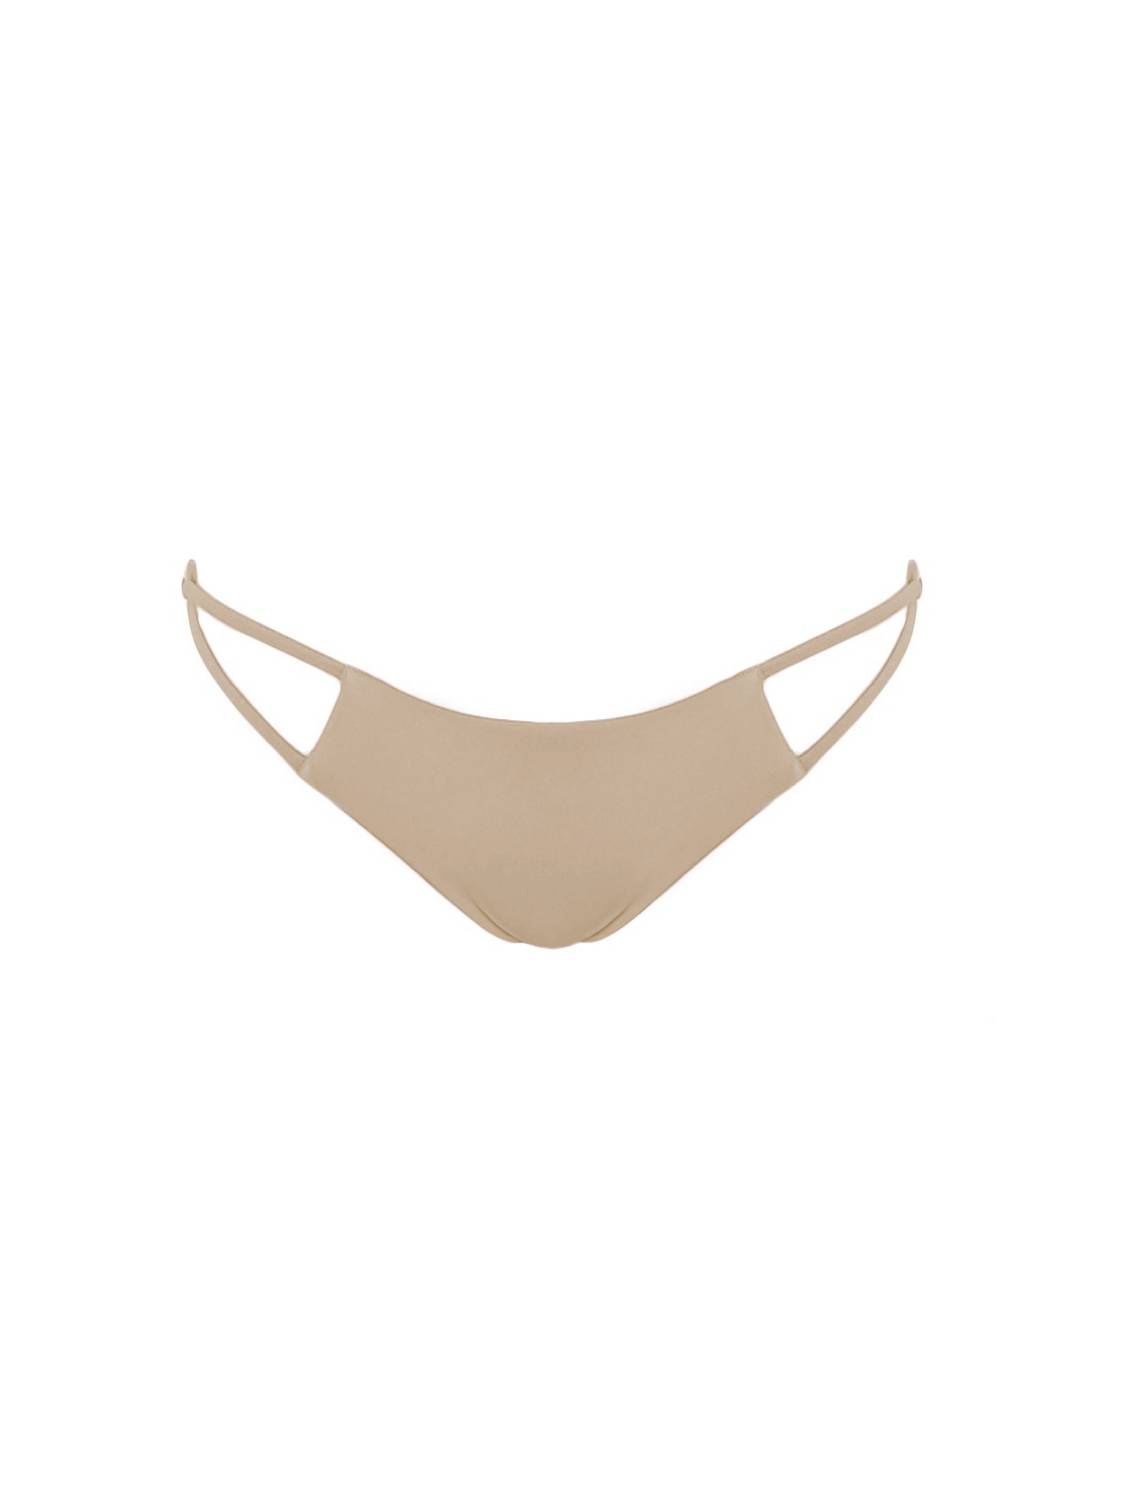 Tamai top bottom sand beige piaskowy beżowy spaghetti strap bikini strój kąpielowy polska marka swmiwear swimsuit straps brazilian bottoms